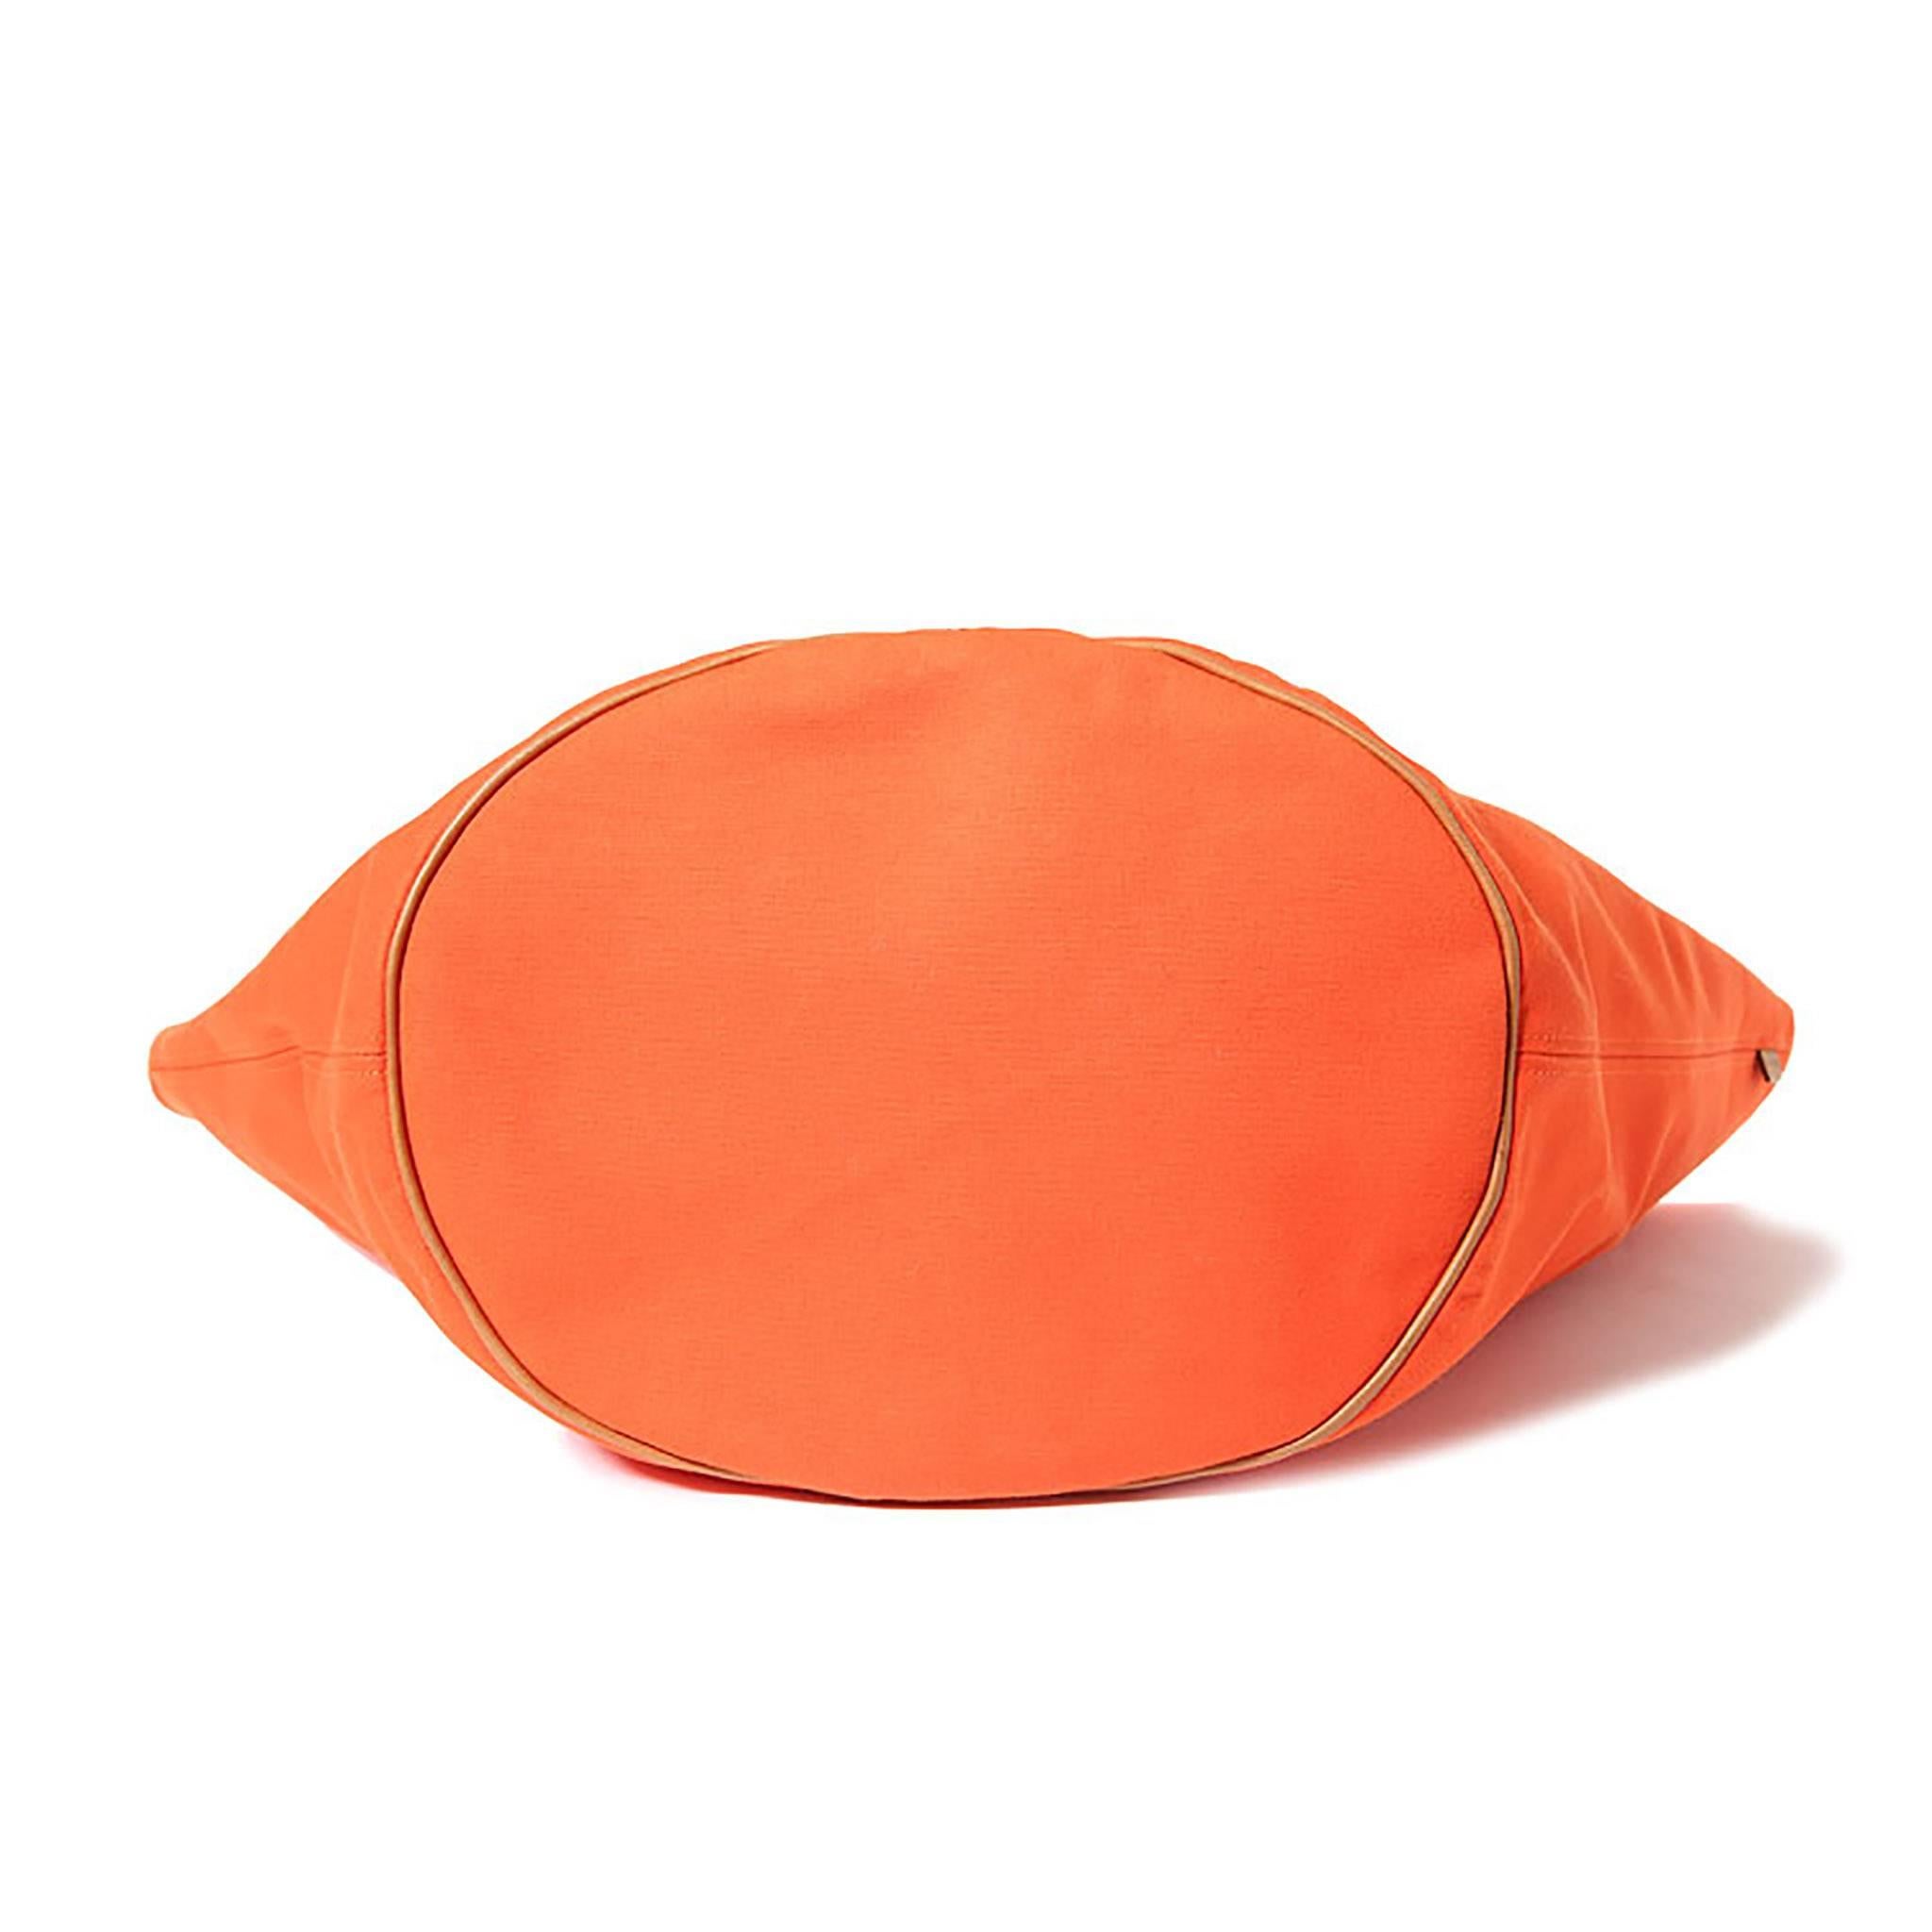 Women's Hermes Canvas Shopping Bag Orange